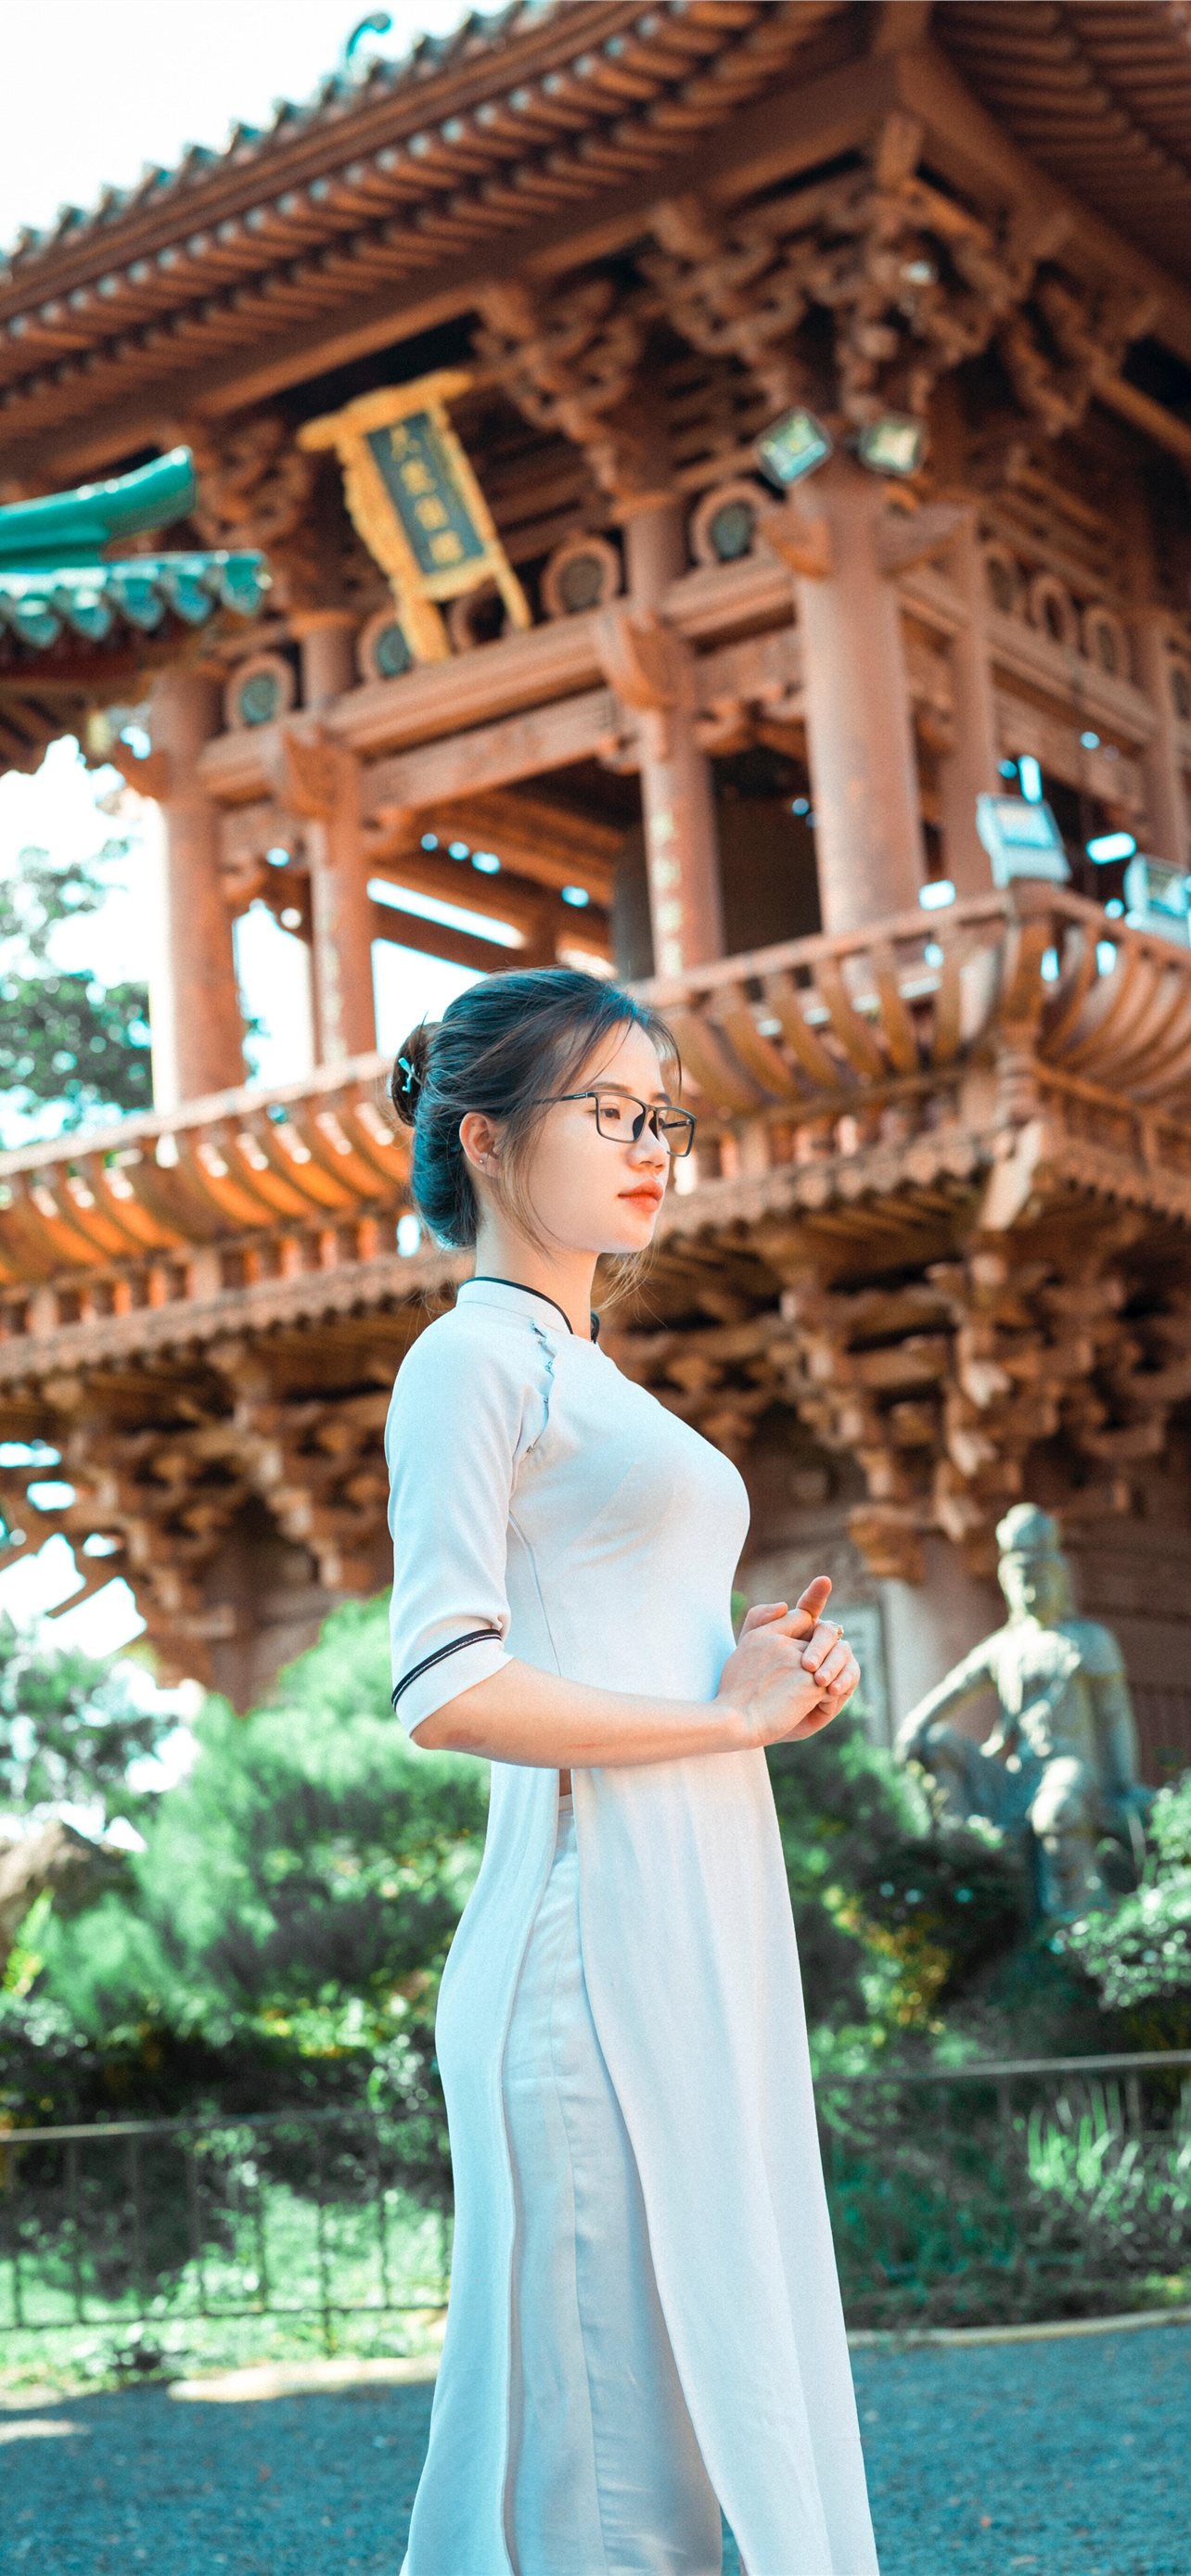 Một cô nàng xinh đẹp đang đứng trước ngôi đền Trung Quốc cổ kính - bạn sẽ không muốn bỏ lỡ bức ảnh đẹp như thế này. Và còn nhiều bức ảnh nữa về những kiến trúc đặc sắc của Trung Quốc và cô gái dễ thương để bạn chiêm ngưỡng.